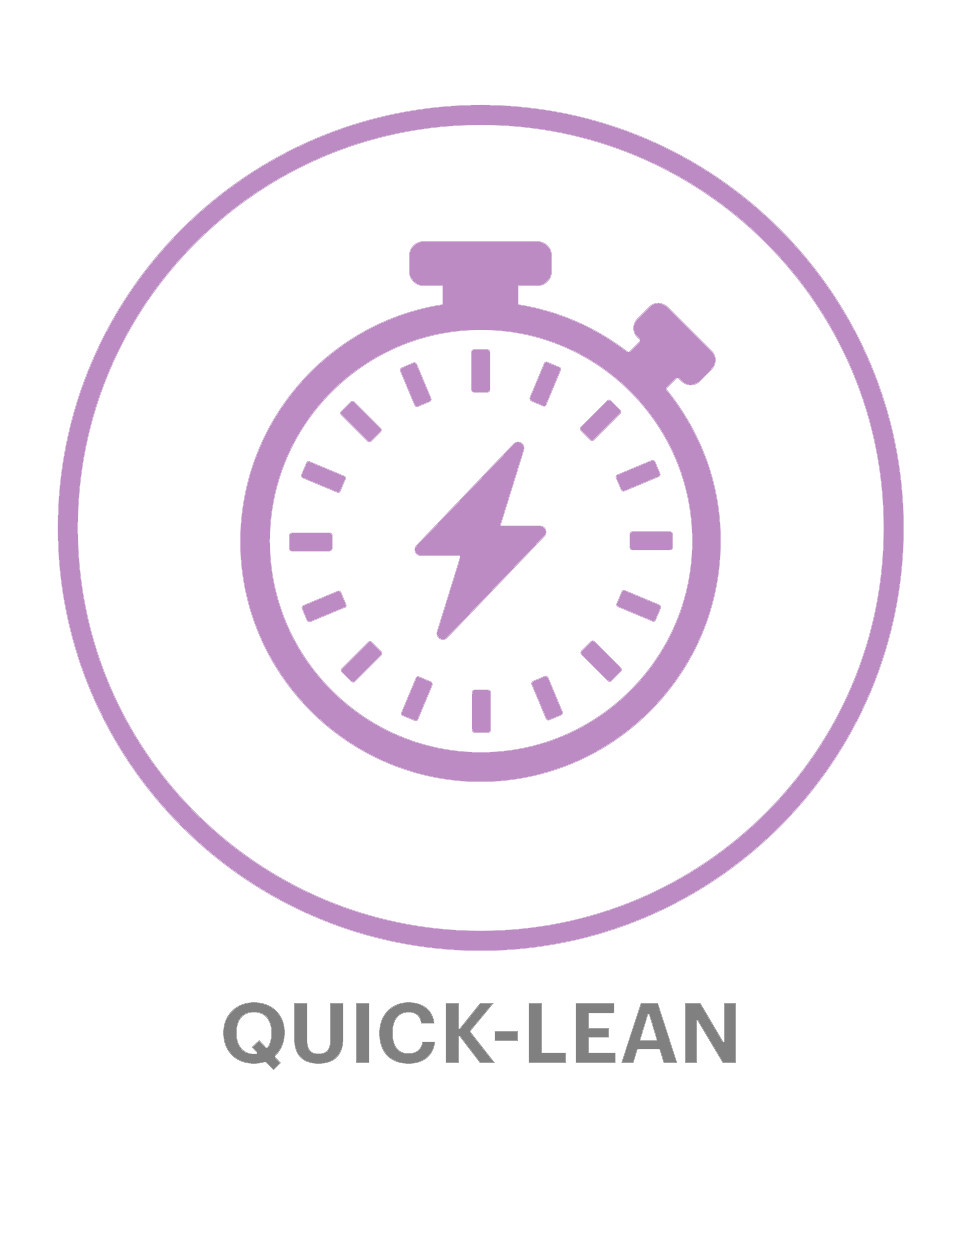 Quick-lean